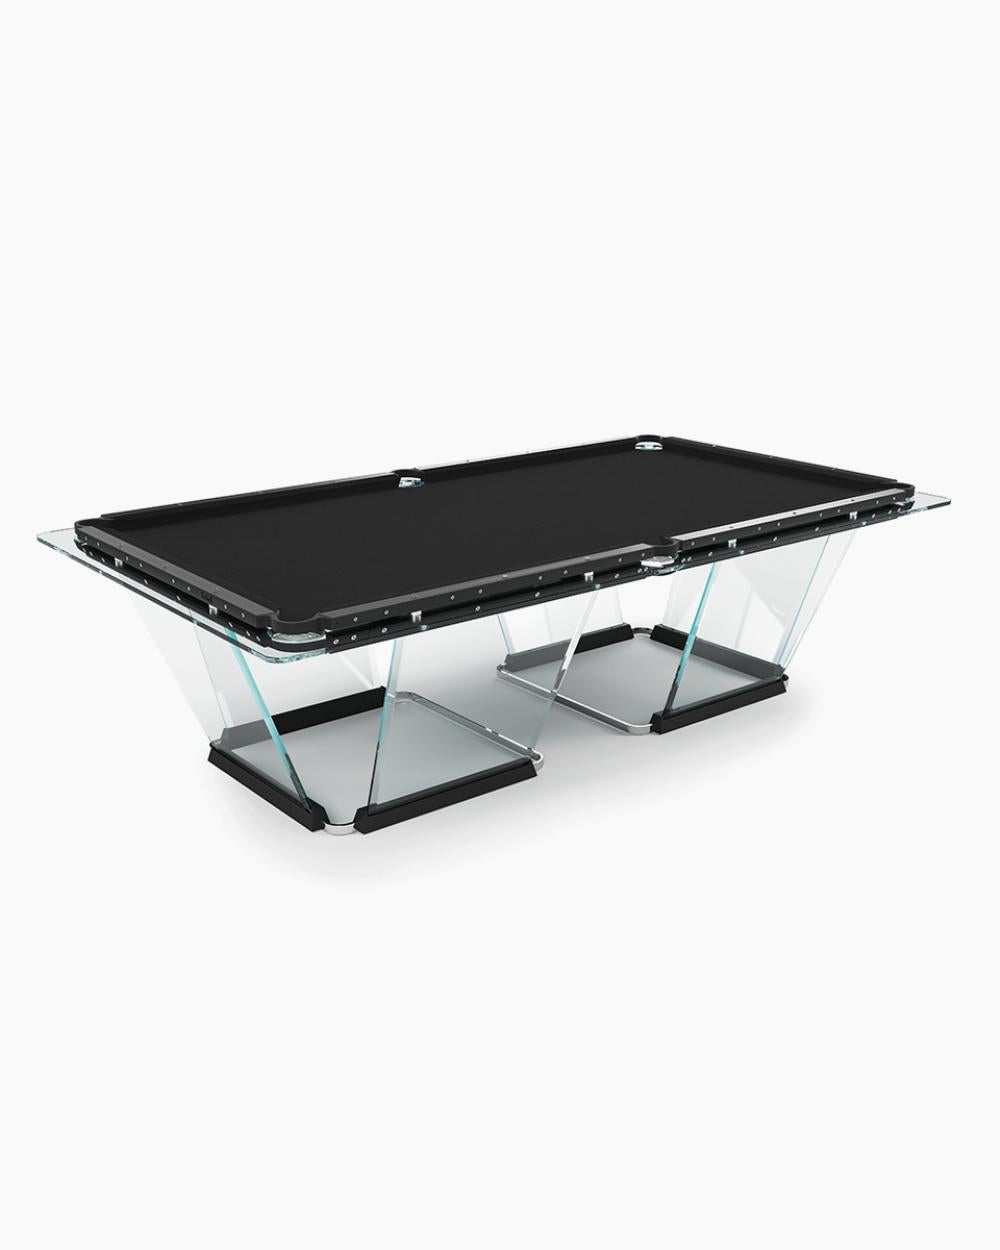 T1.1 Schwarzer Billardtisch mit schwarzer Zierleiste lockt sowohl Designliebhaber als auch Spitzenspieler an. Das Licht tanzt über die handgefertigten Glasflächen und schimmert, wenn es auf die schwarzen Aluminiumschienen trifft. Das Spielfeld aus